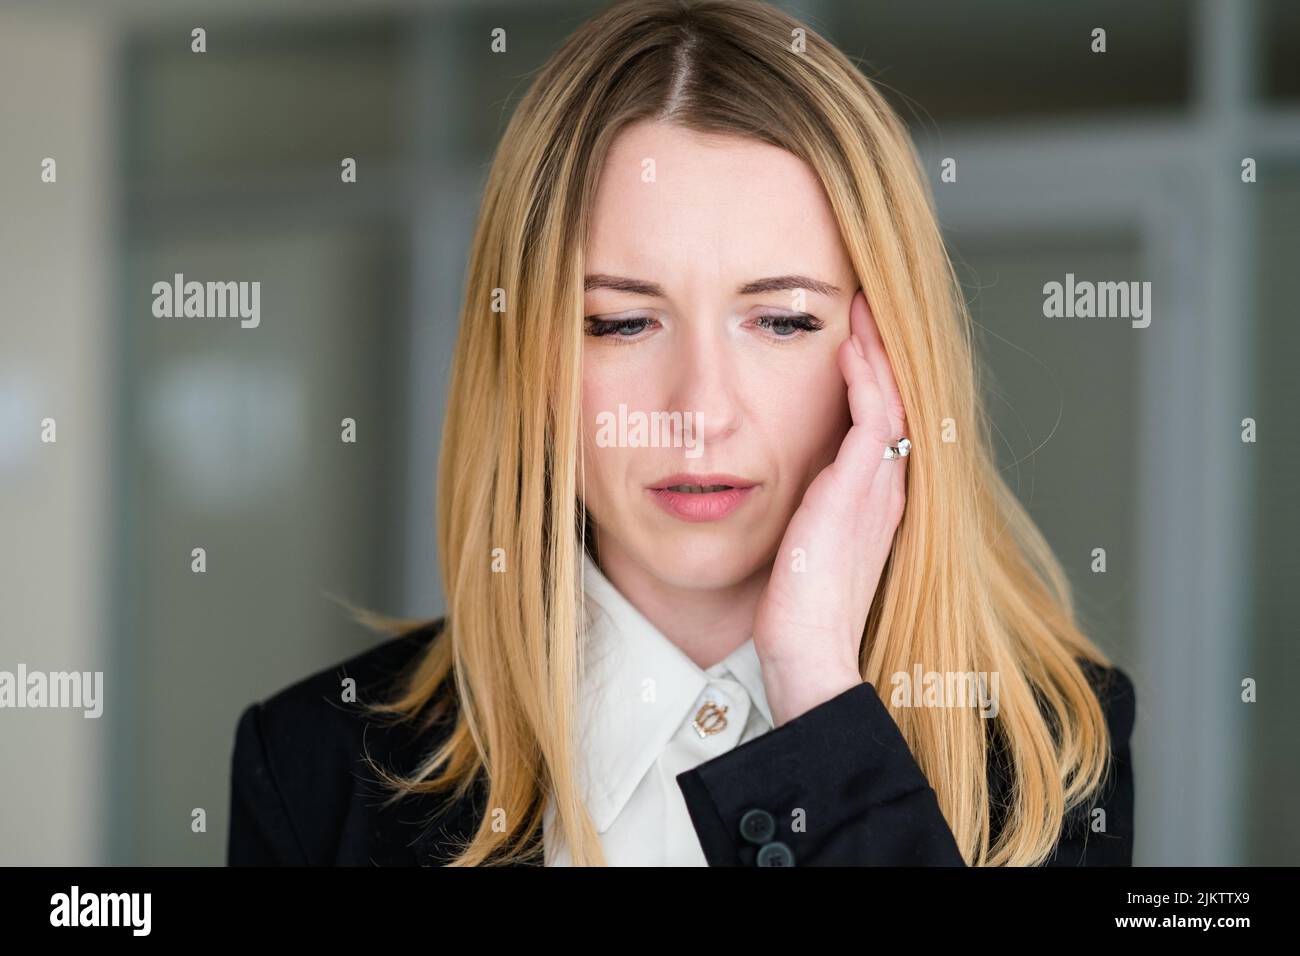 emotion upset confused dismayed business lady Stock Photo